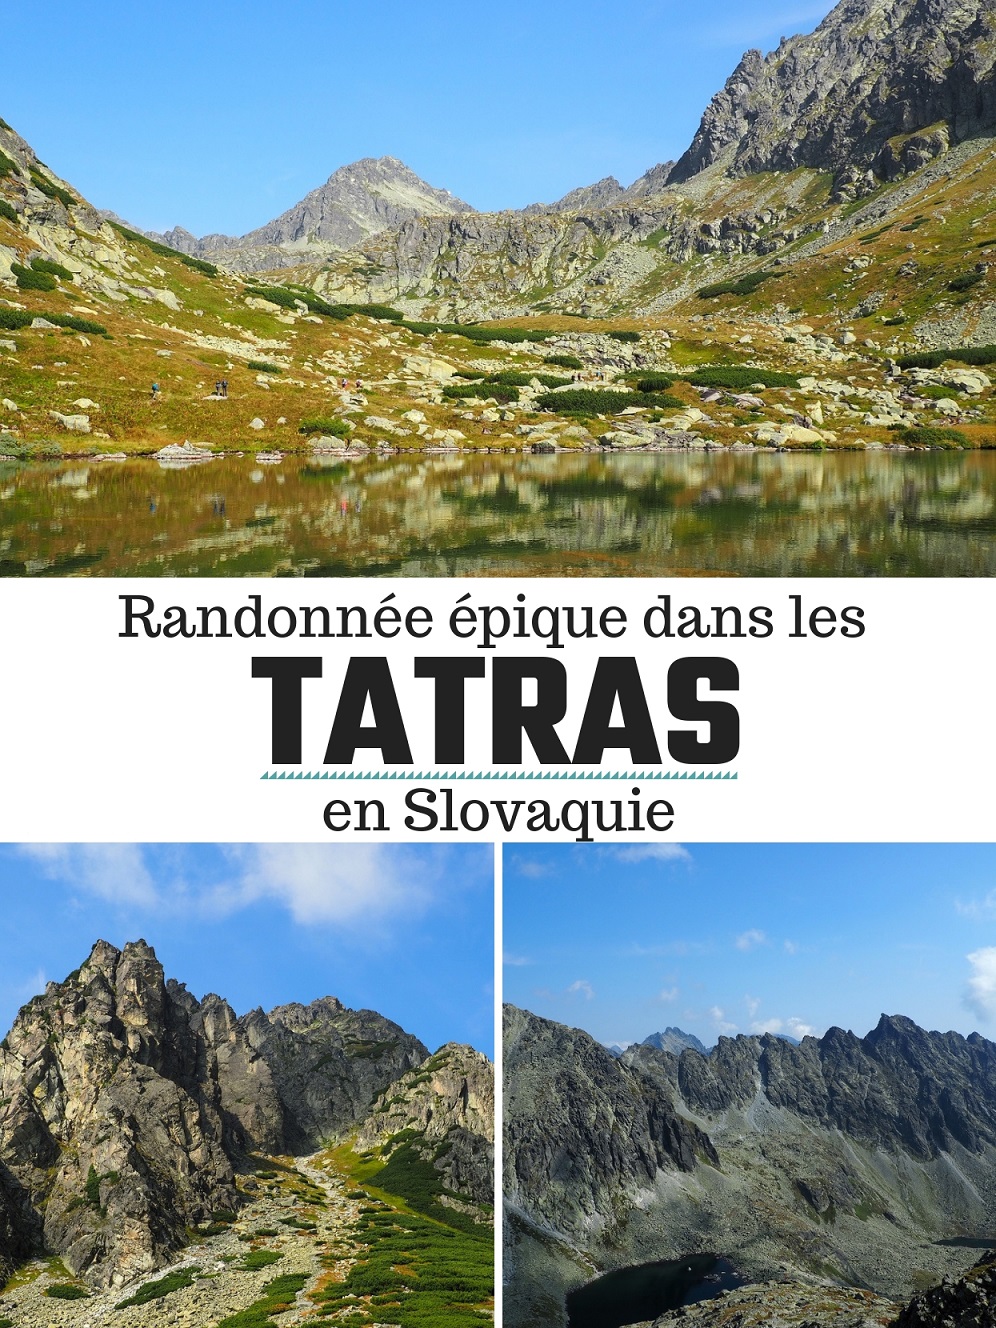 Randonnée épique dans les Tatras en Slovaquie depuis Štrbské Pleso: informations pratiques, parcours, conseils et partage d'expérience.